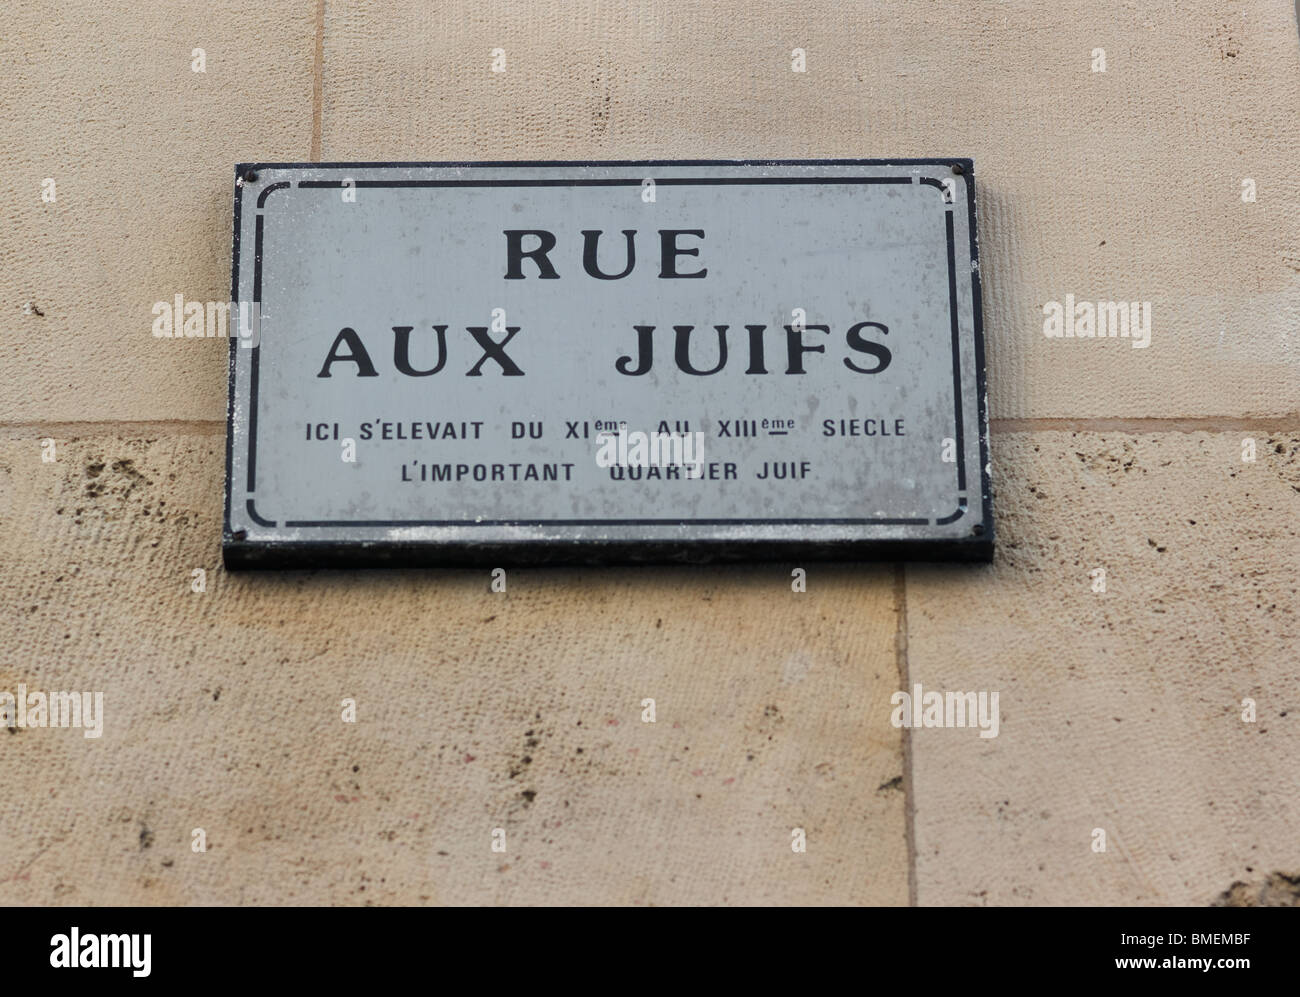 RUE AUX JUIFS ROUEN, FRANCE Stock Photo - Alamy